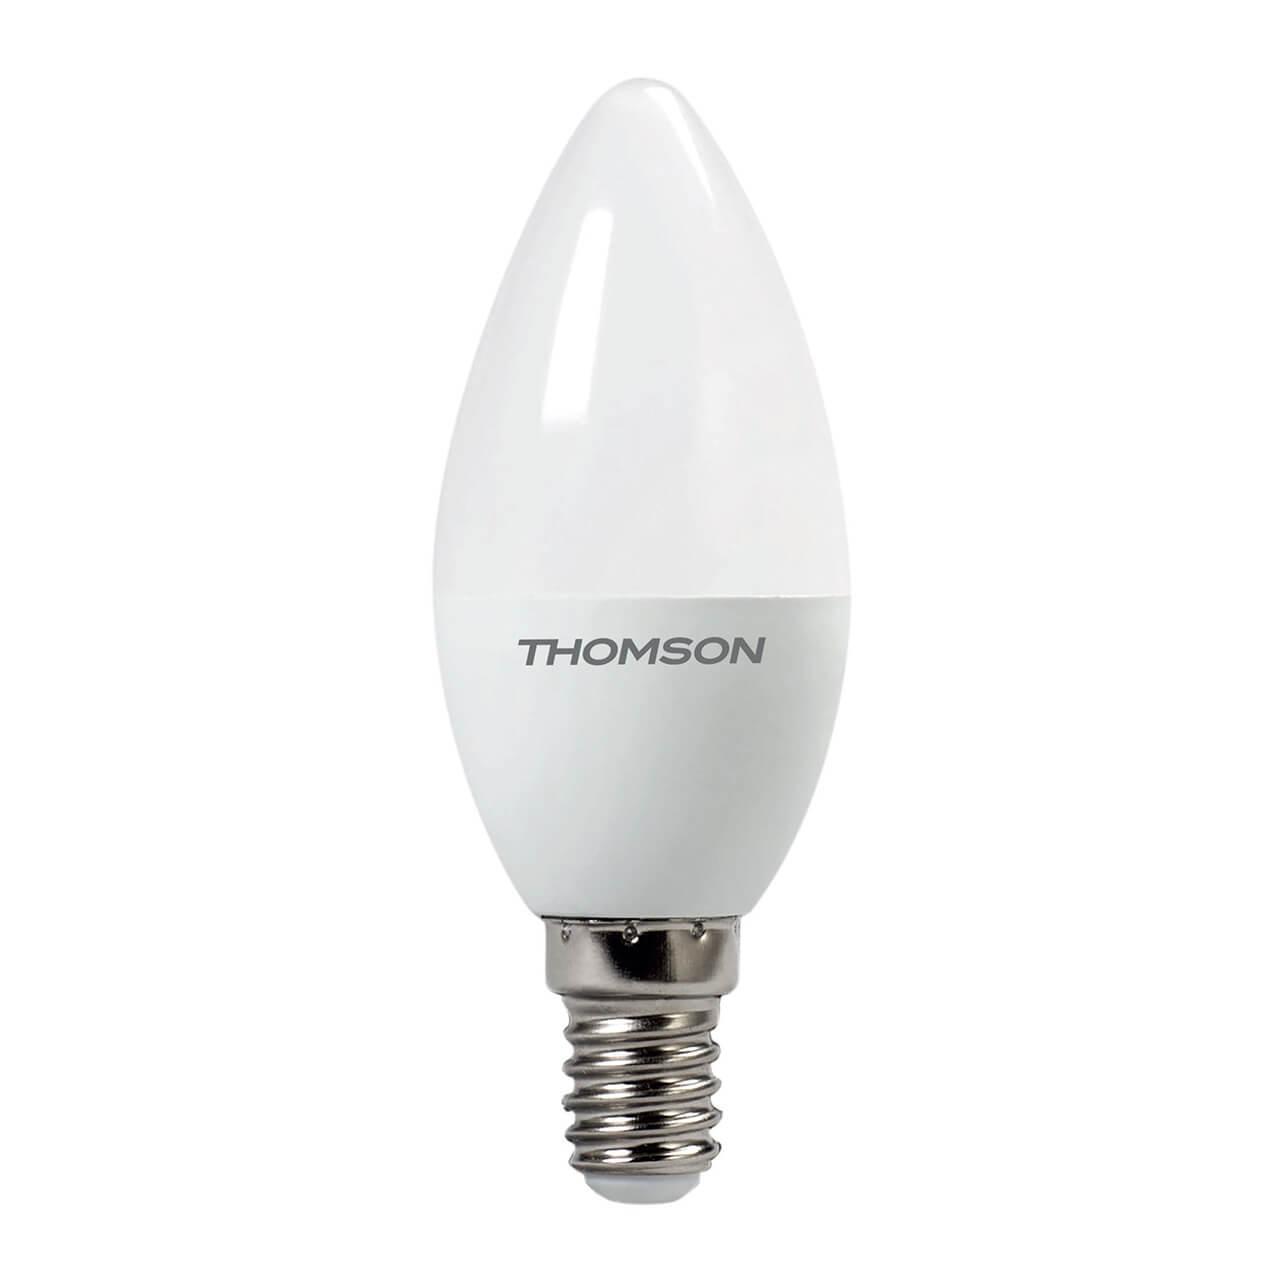 TH-B2017 Лампа светодиодная E14 10W 3000K свеча матовая Thomson